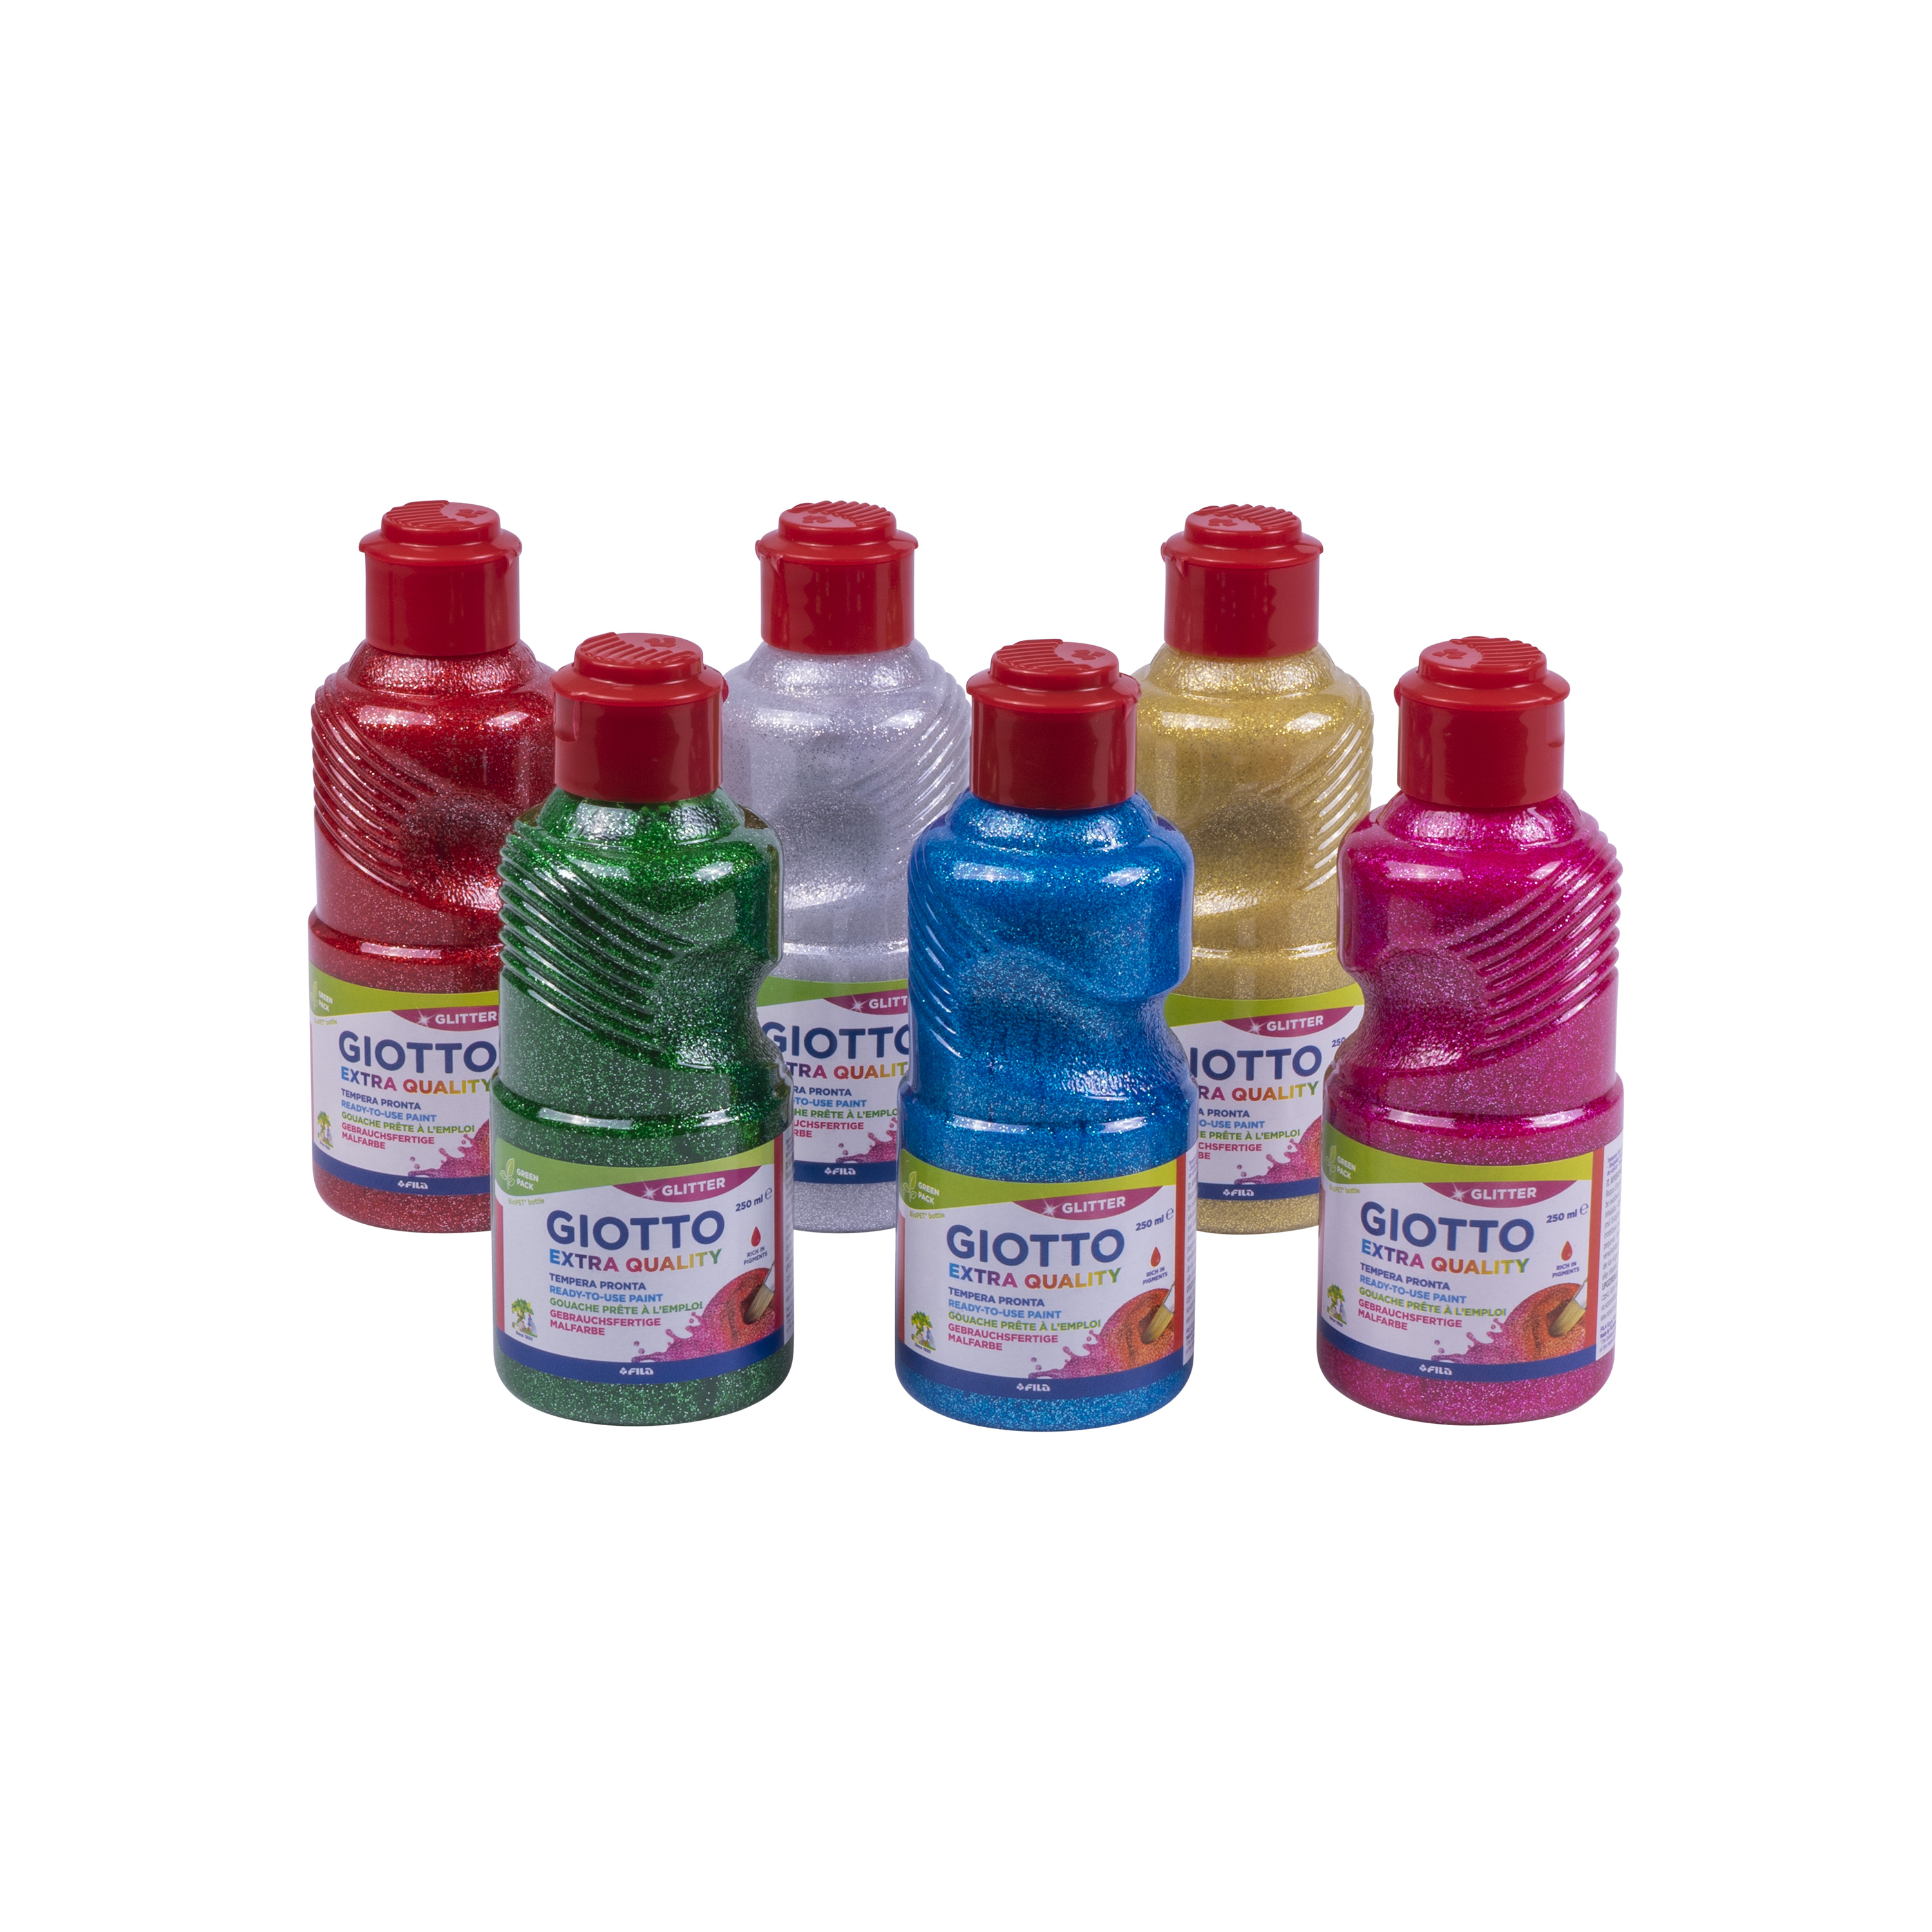 GIOTTO Glitter Paint in Einzelfarben, 250 ml je Flasche